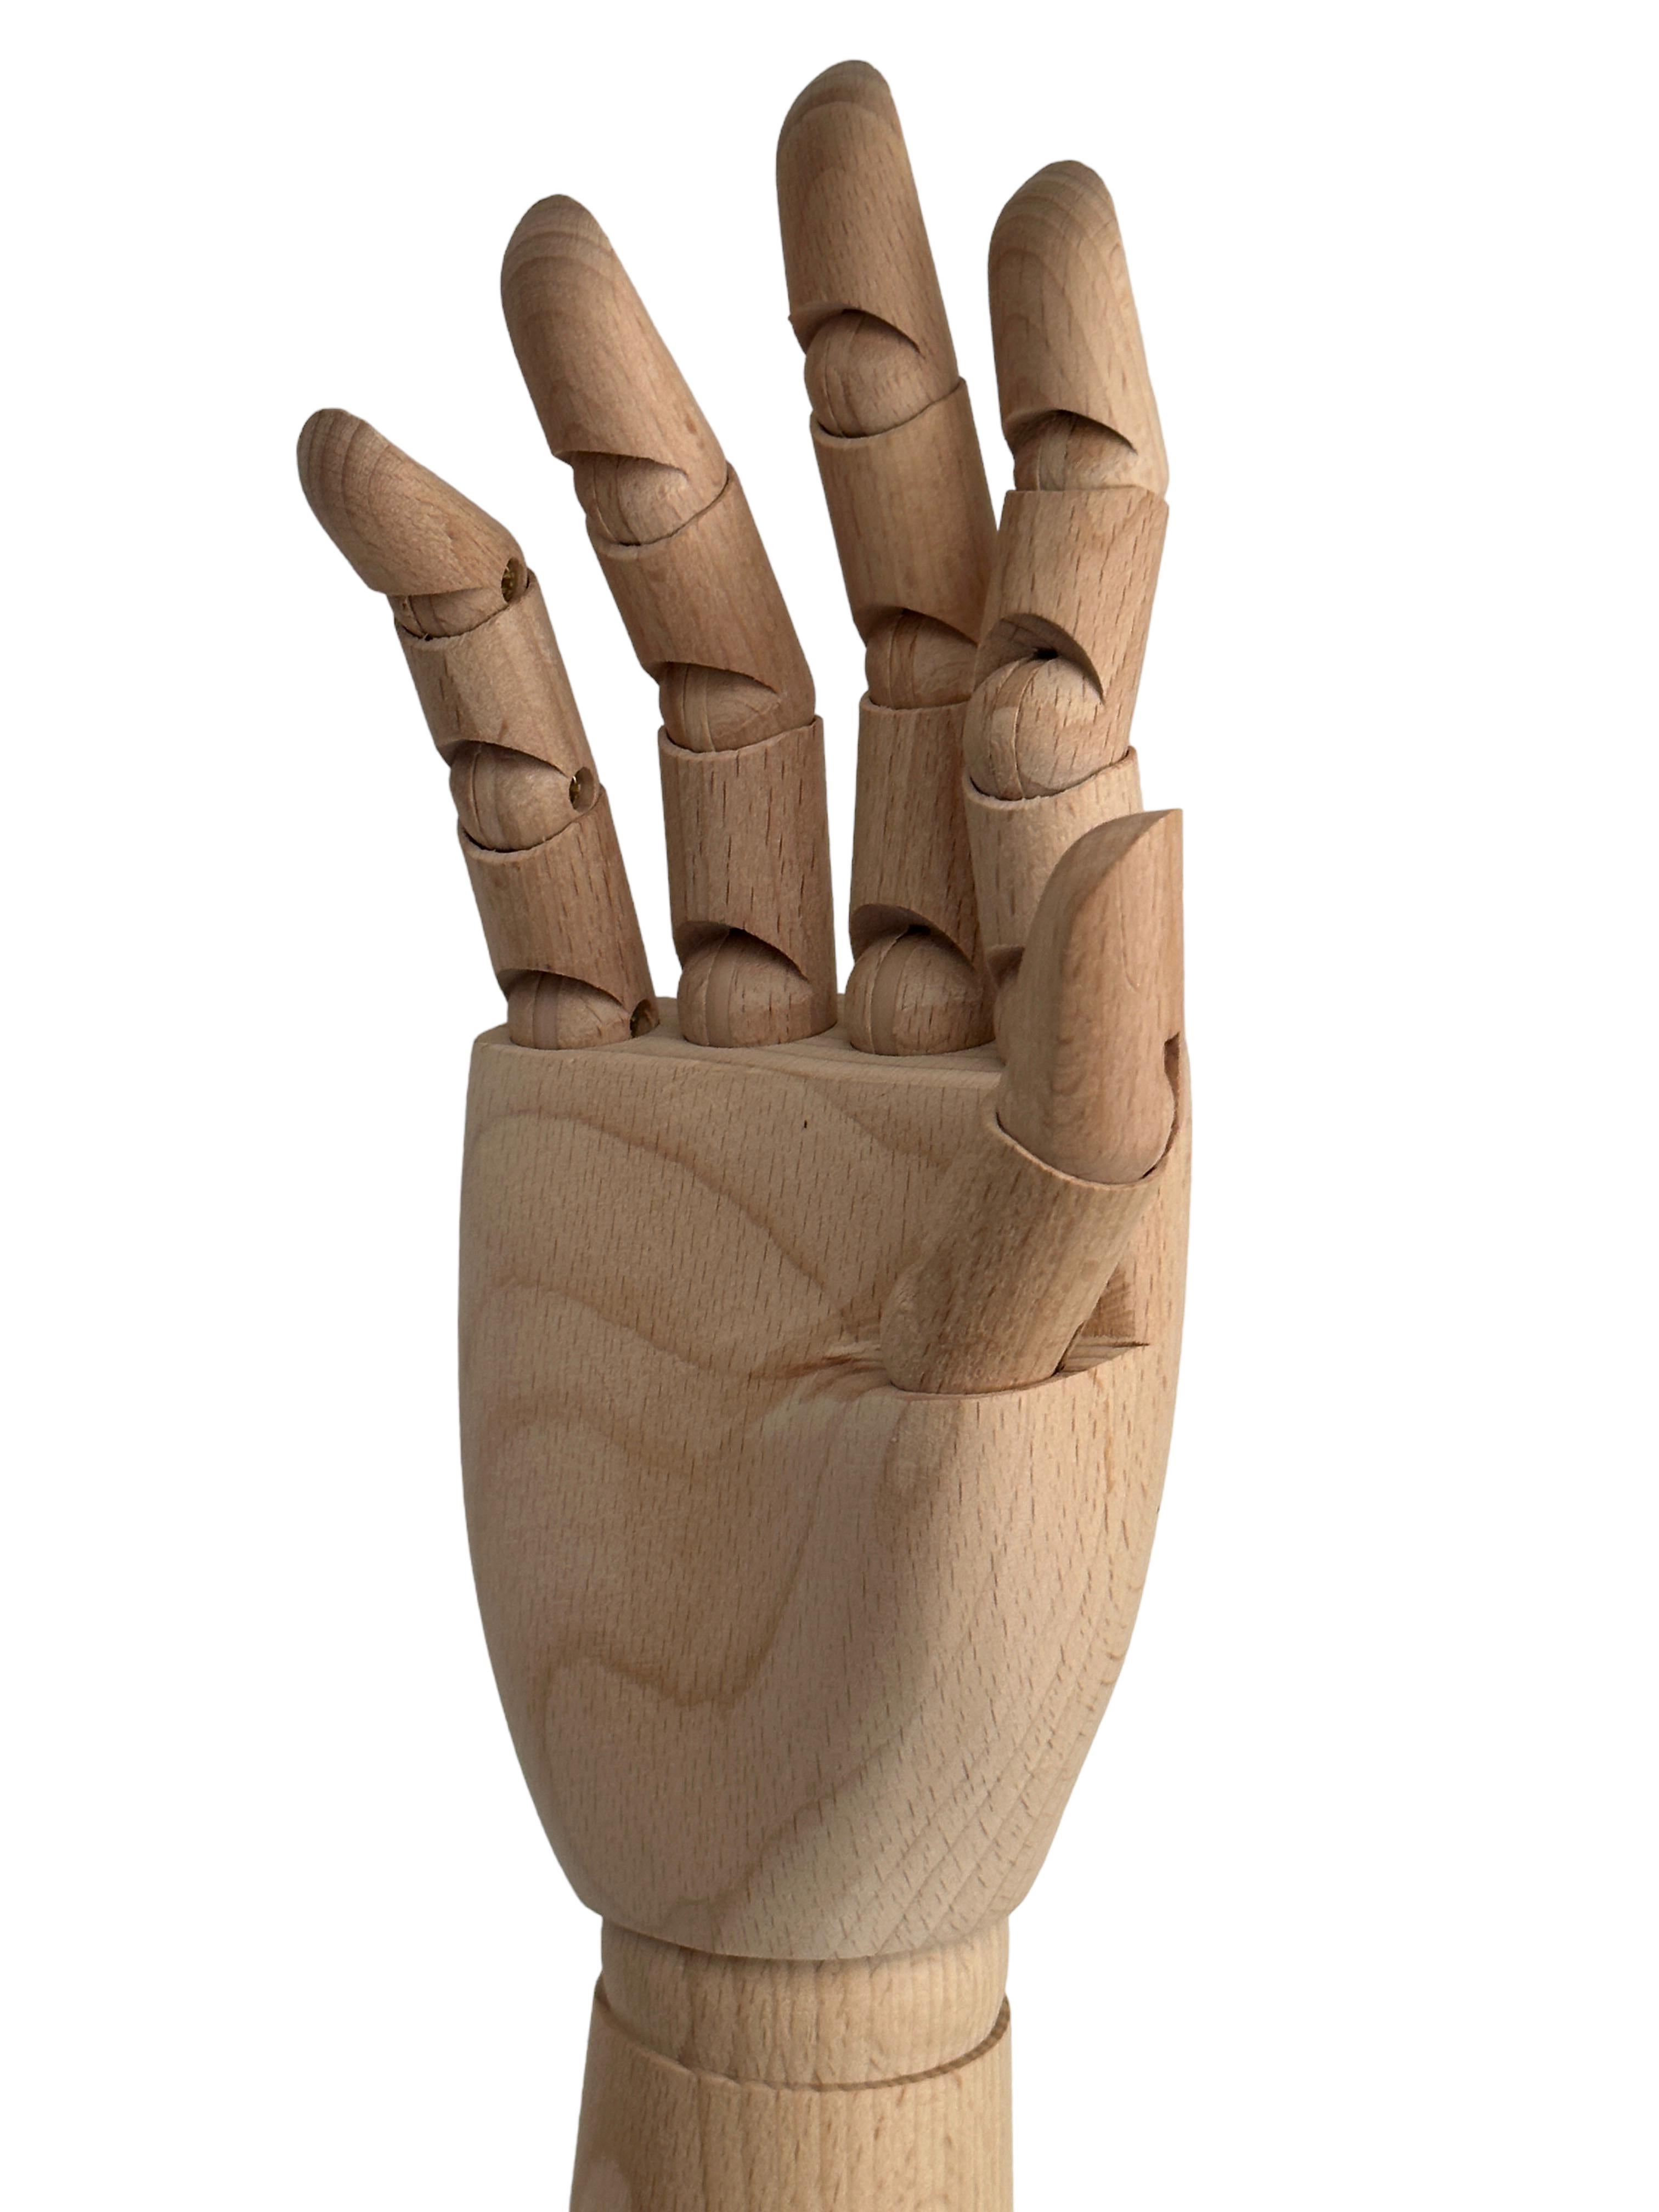 Fin du 20e siècle Modèle de grand mannequin en bois traditionnel Art Déco réalisé à la main par un artiste  en vente